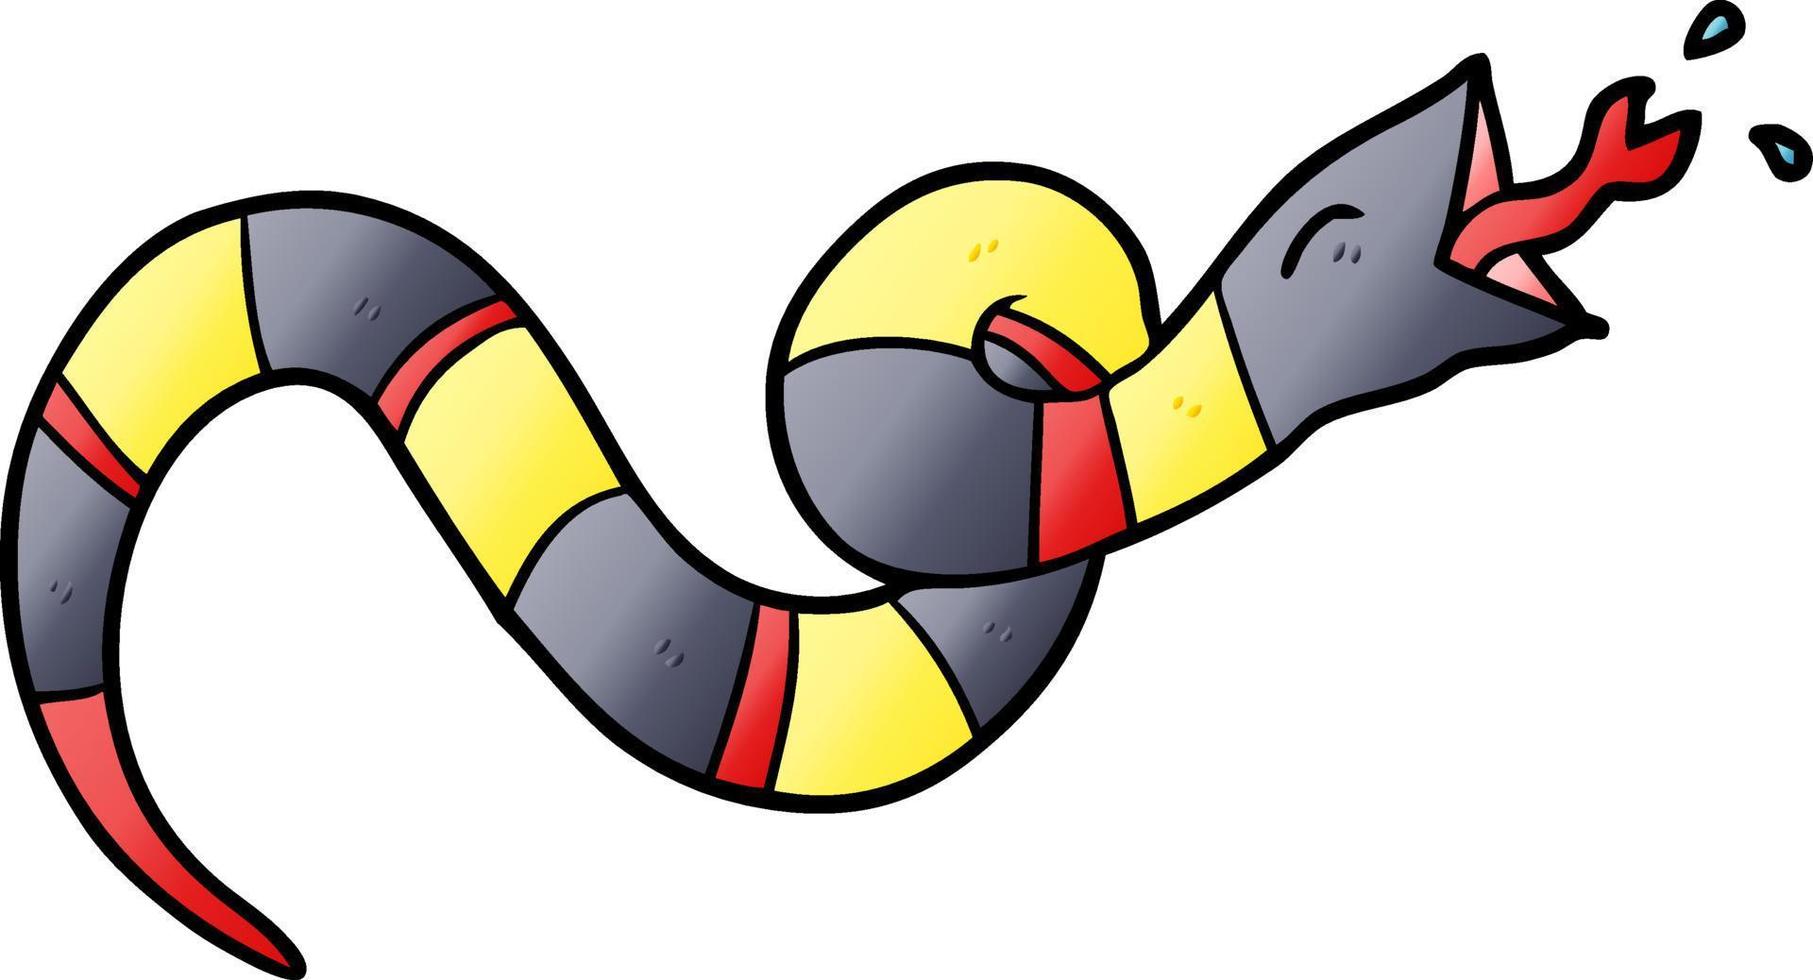 serpent sifflant de dessin animé vecteur